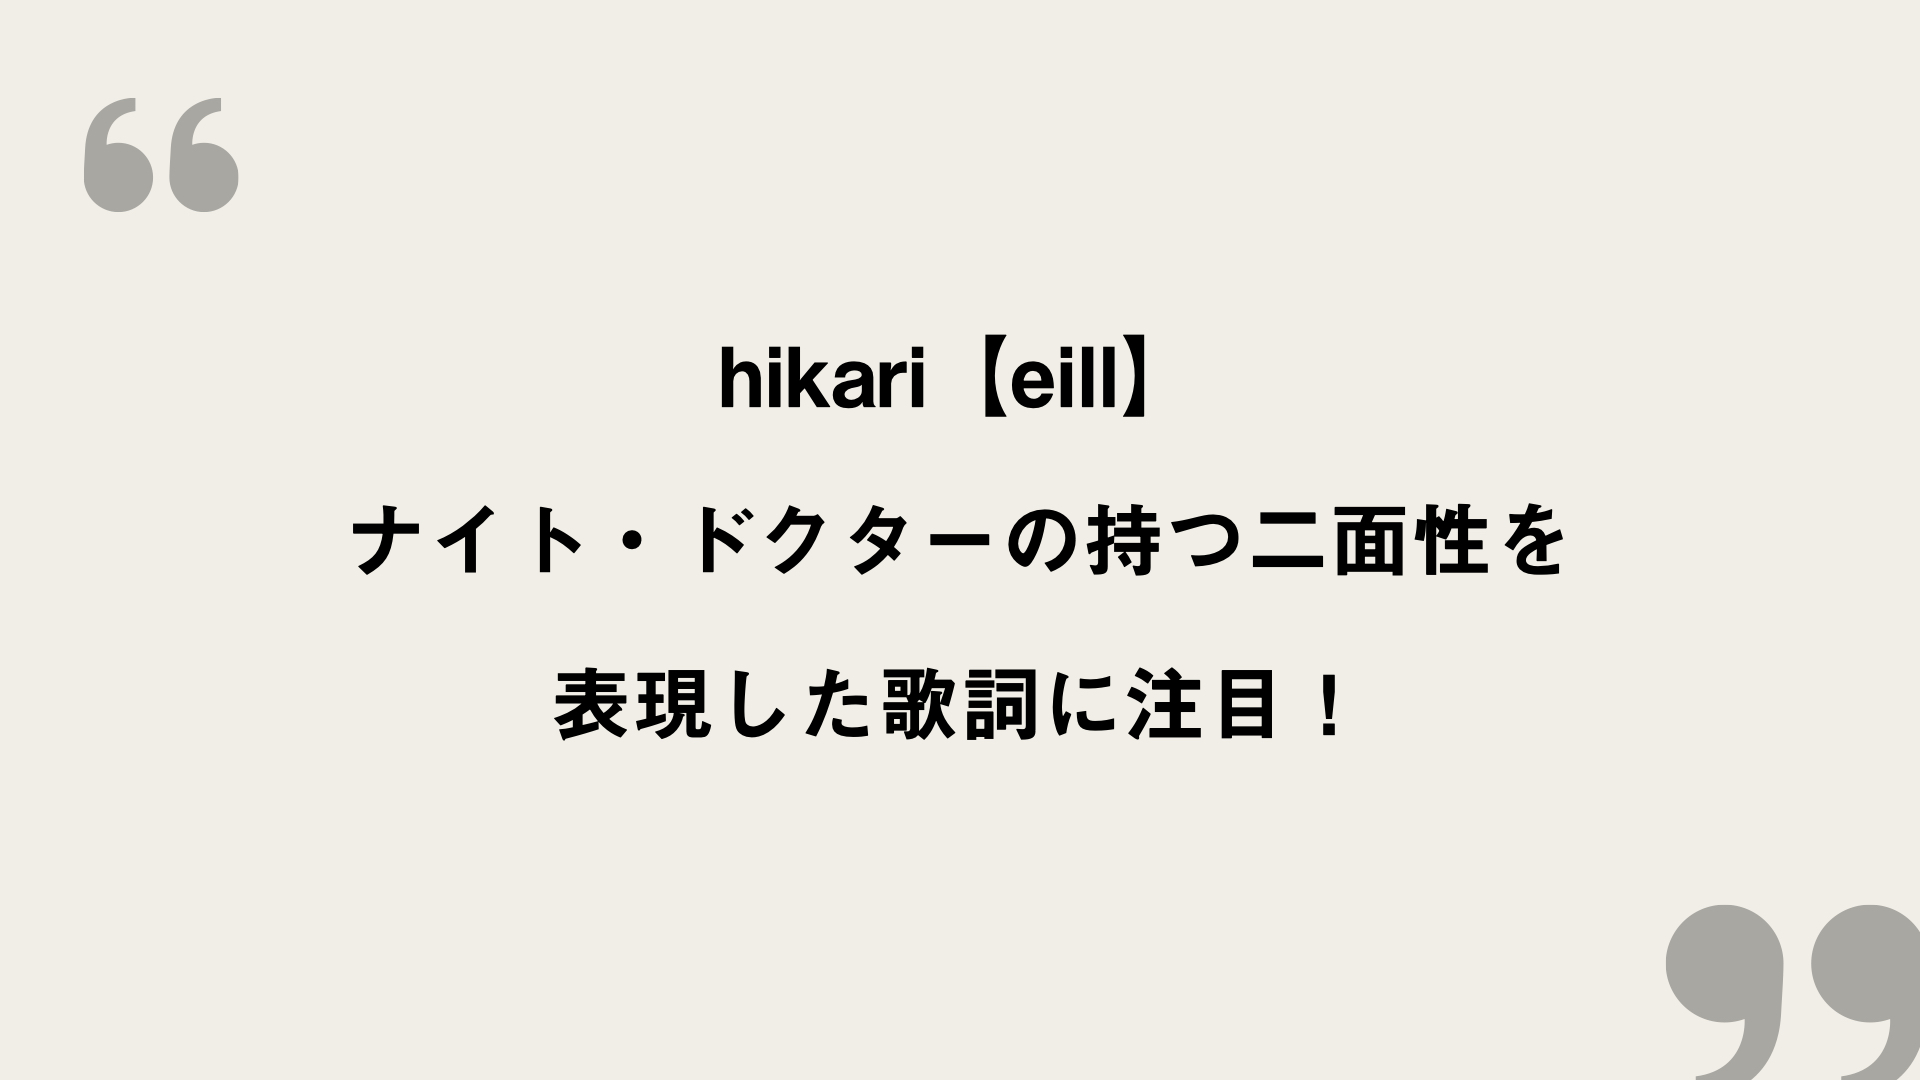 Hikari Eill 歌詞の意味を考察 ナイト ドクターの持つ二面性を表現した歌詞に注目 Framu Media